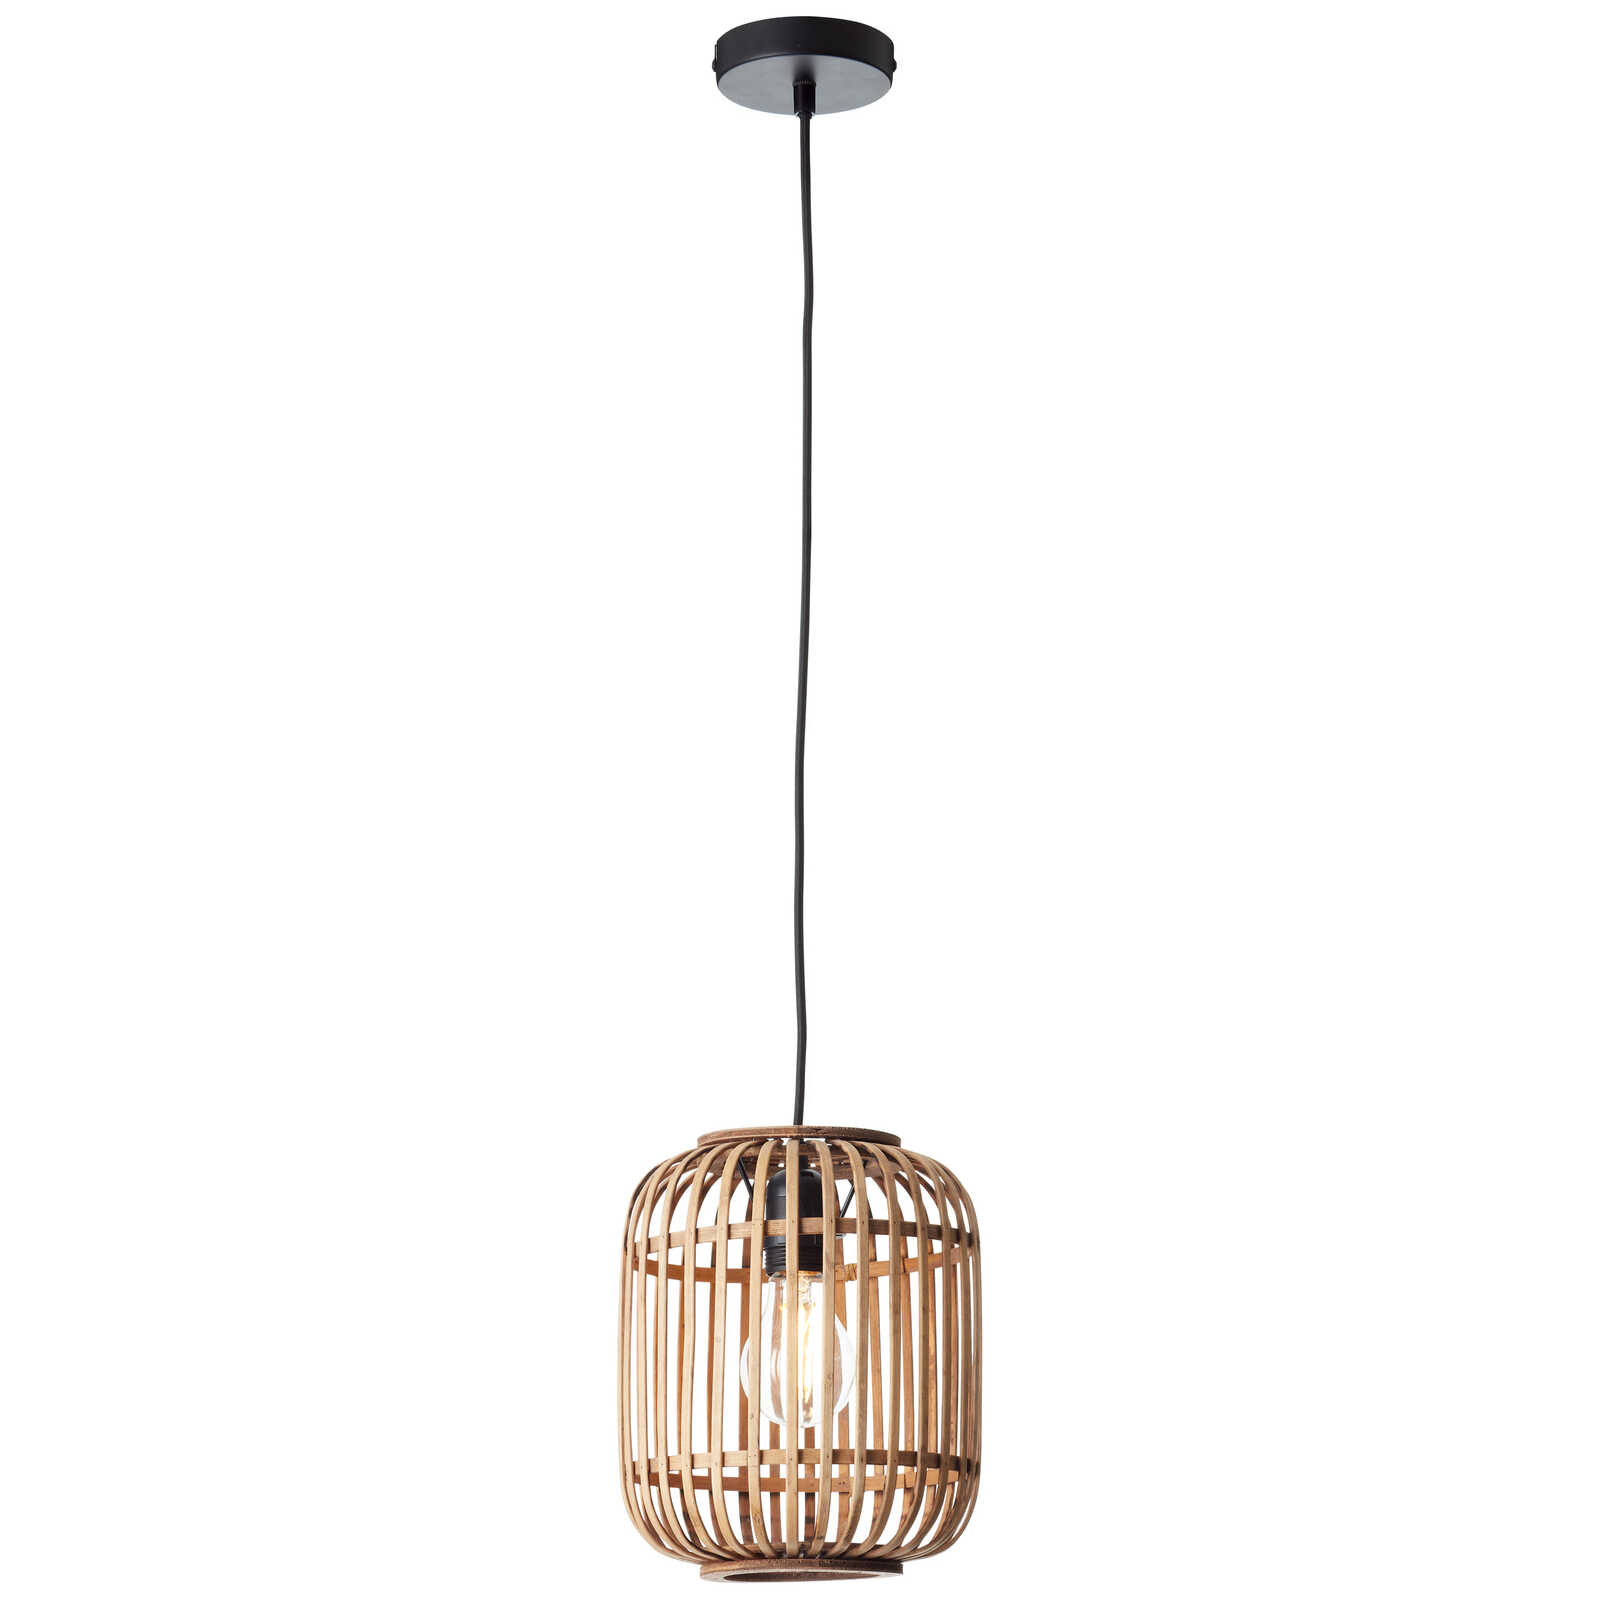             Metalen hanglamp - Willi 16 - Bruin
        